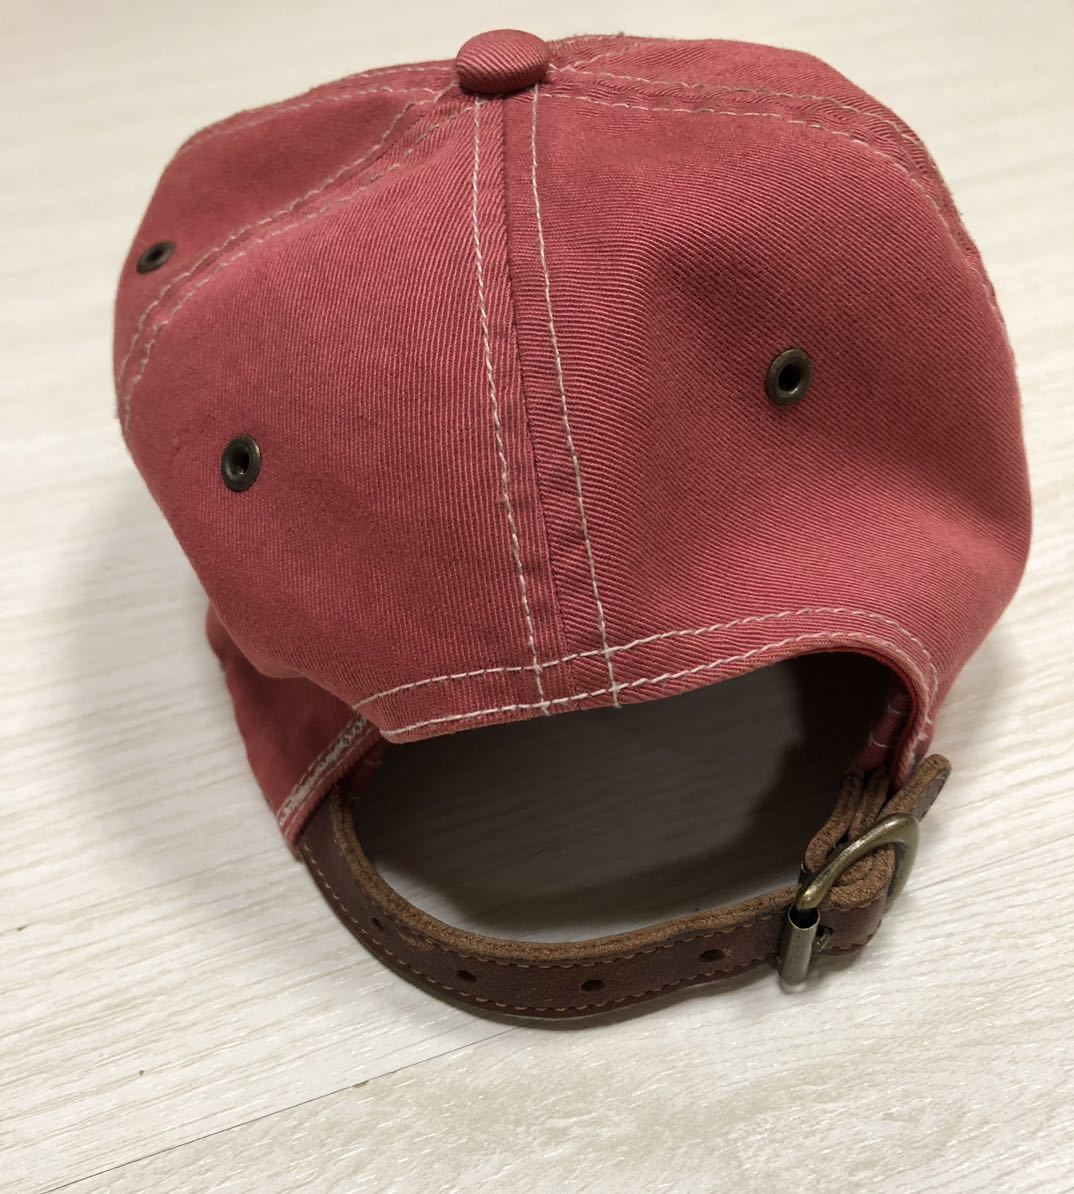  RR L RRL Ralph Lauren Tracker колпак шляпа 1990 годы стандартный товар Polo первый период Toyokawa .. красный красный бейсболка Polo 